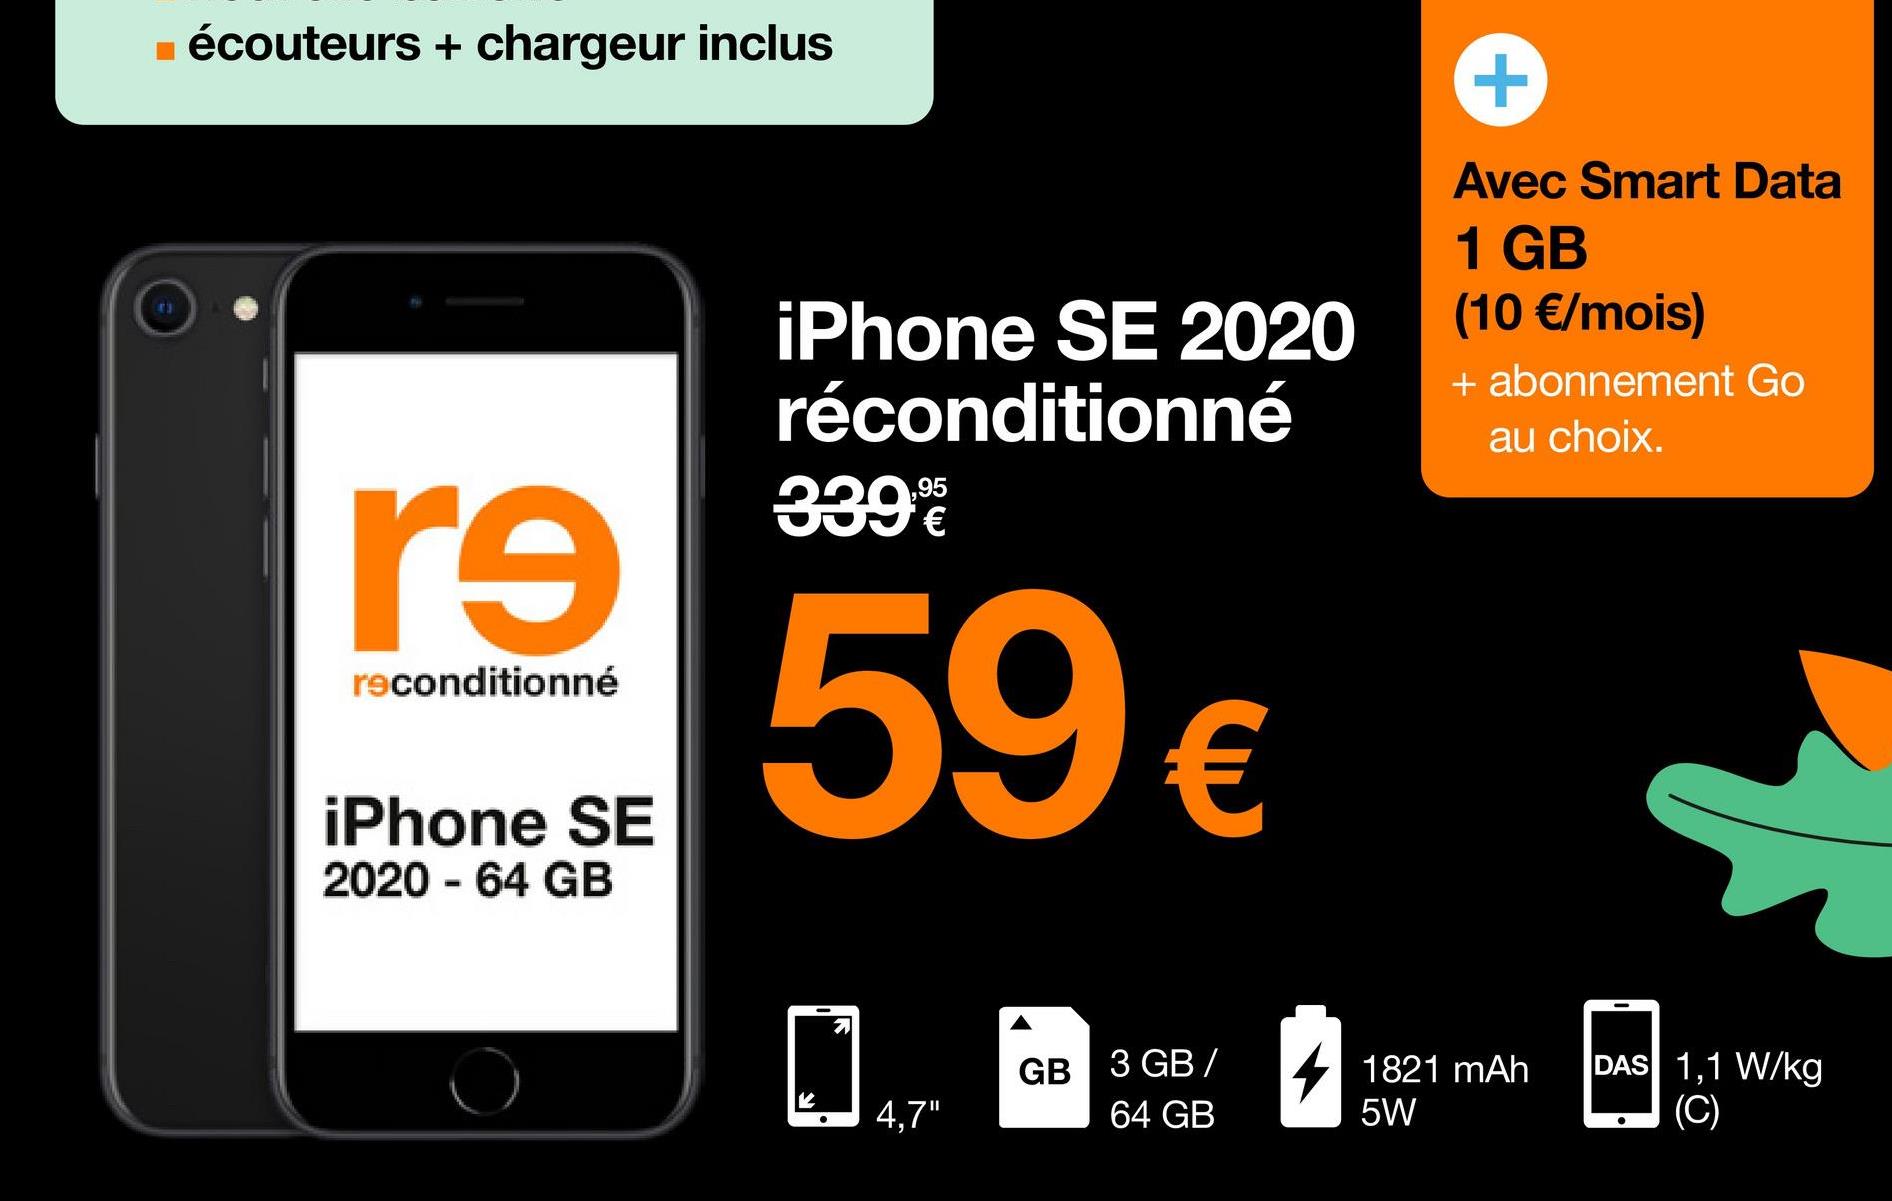 ■ écouteurs + chargeur inclus
re
reconditionné
iPhone SE
2020 - 64 GB
iPhone SE 2020
réconditionné
339%
€
59 €
71
4,7"
GB 3 GB/
64 GB
Avec Smart Data
1 GB
(10 €/mois)
+ abonnement Go
au choix.
1821 mAh
5W
DAS 1,1 W/kg
(C)